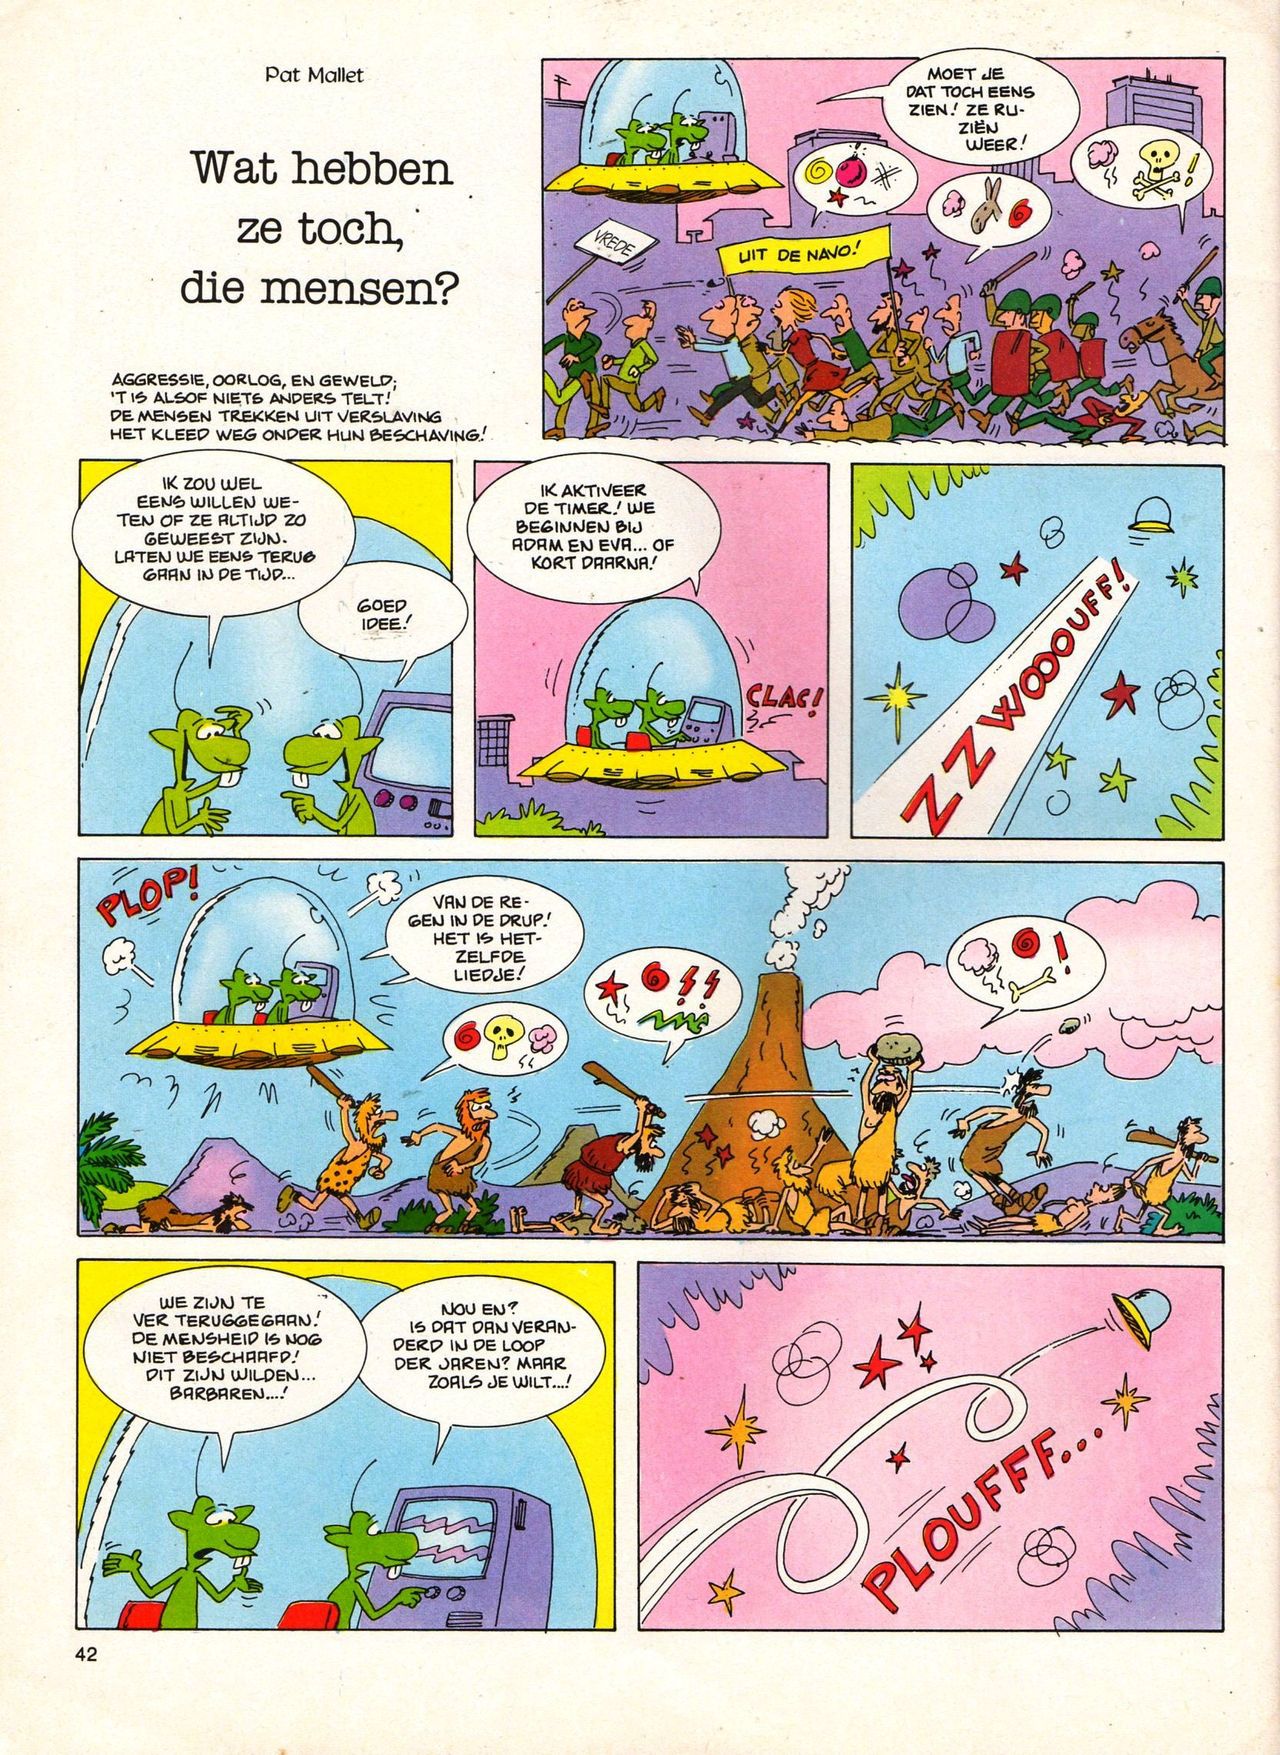 Het Is Groen En Het.. - 04 - Mag Ik Die Ballen.. OH, PARDON! (Dutch) Een oude humoristische serie van Pat Mallet 42